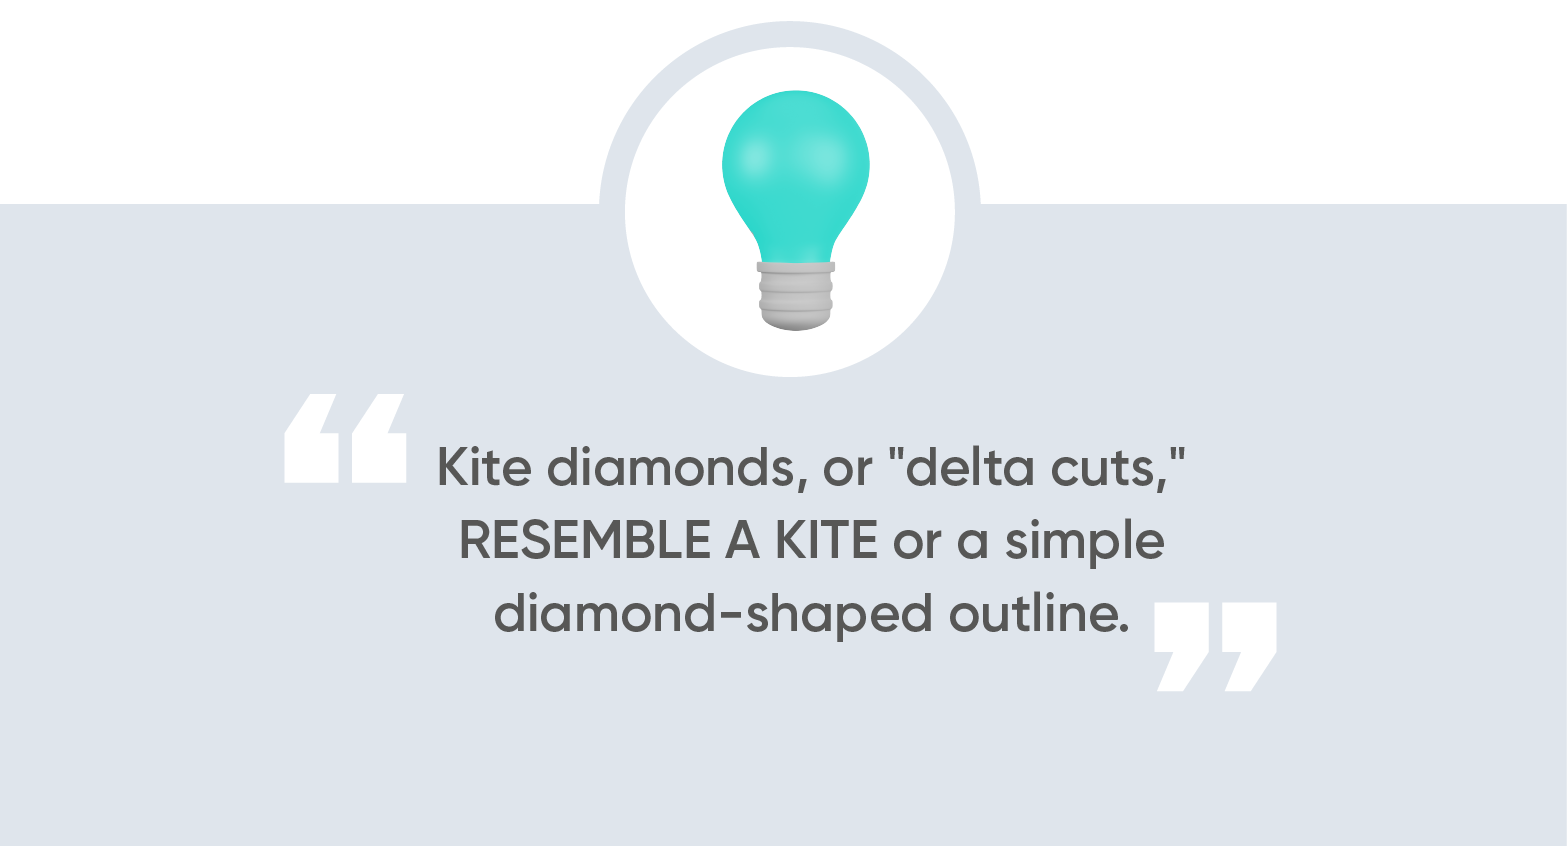 Kite diamonds, also known as “delta cuts,”